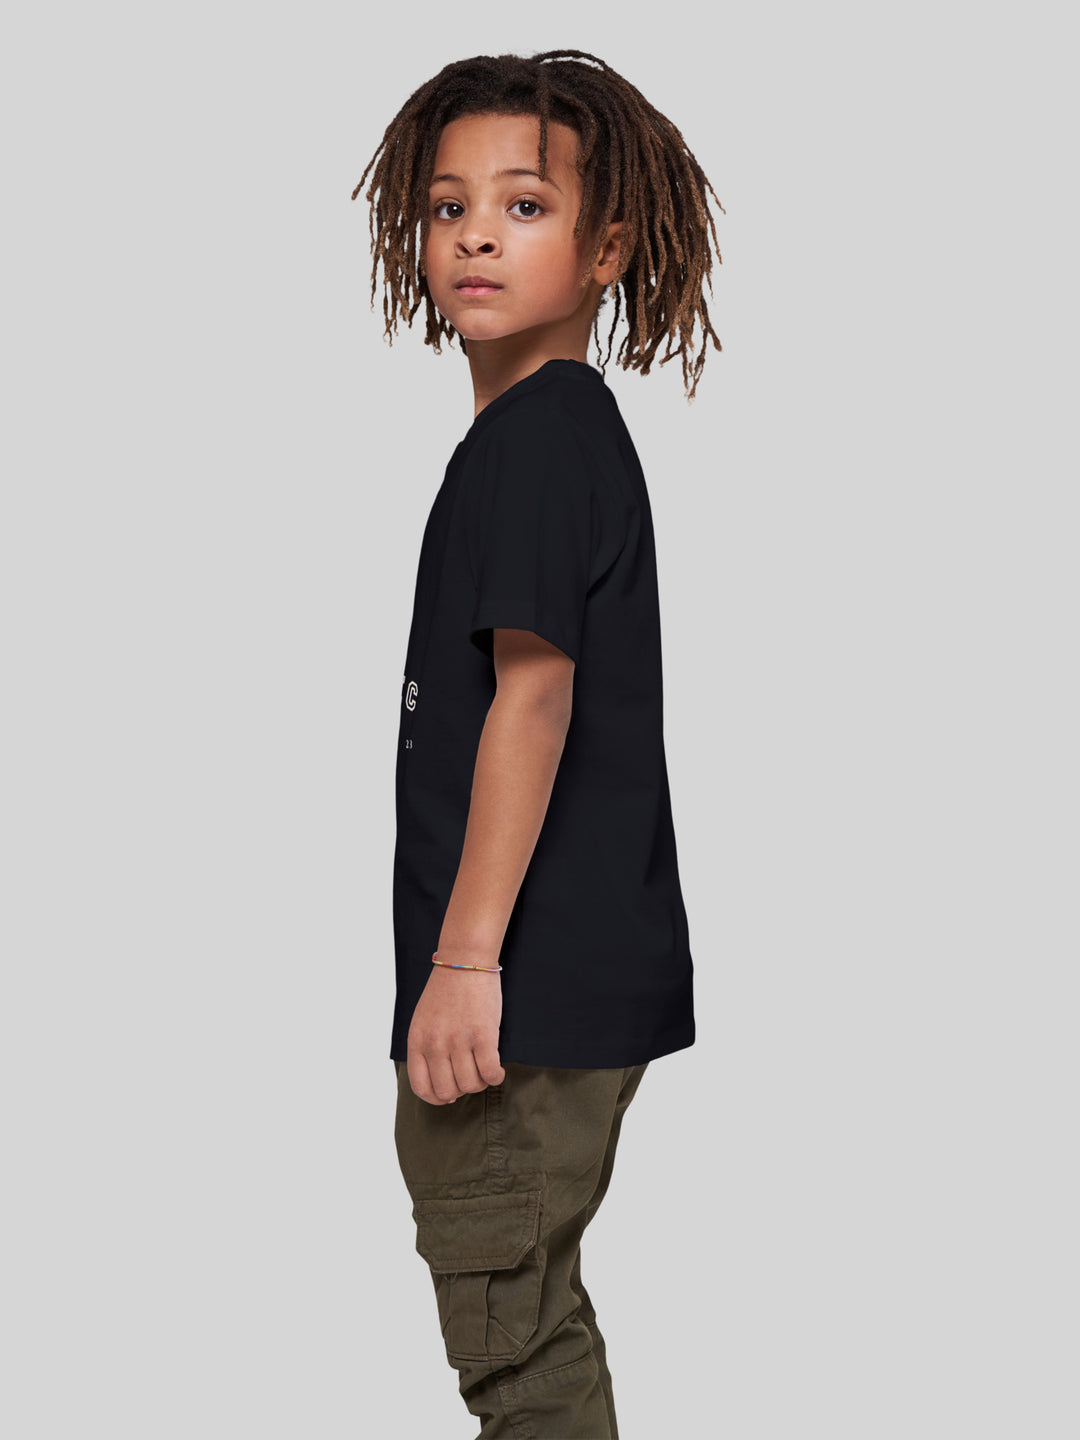 FINN | Kids T-Shirt Möwe